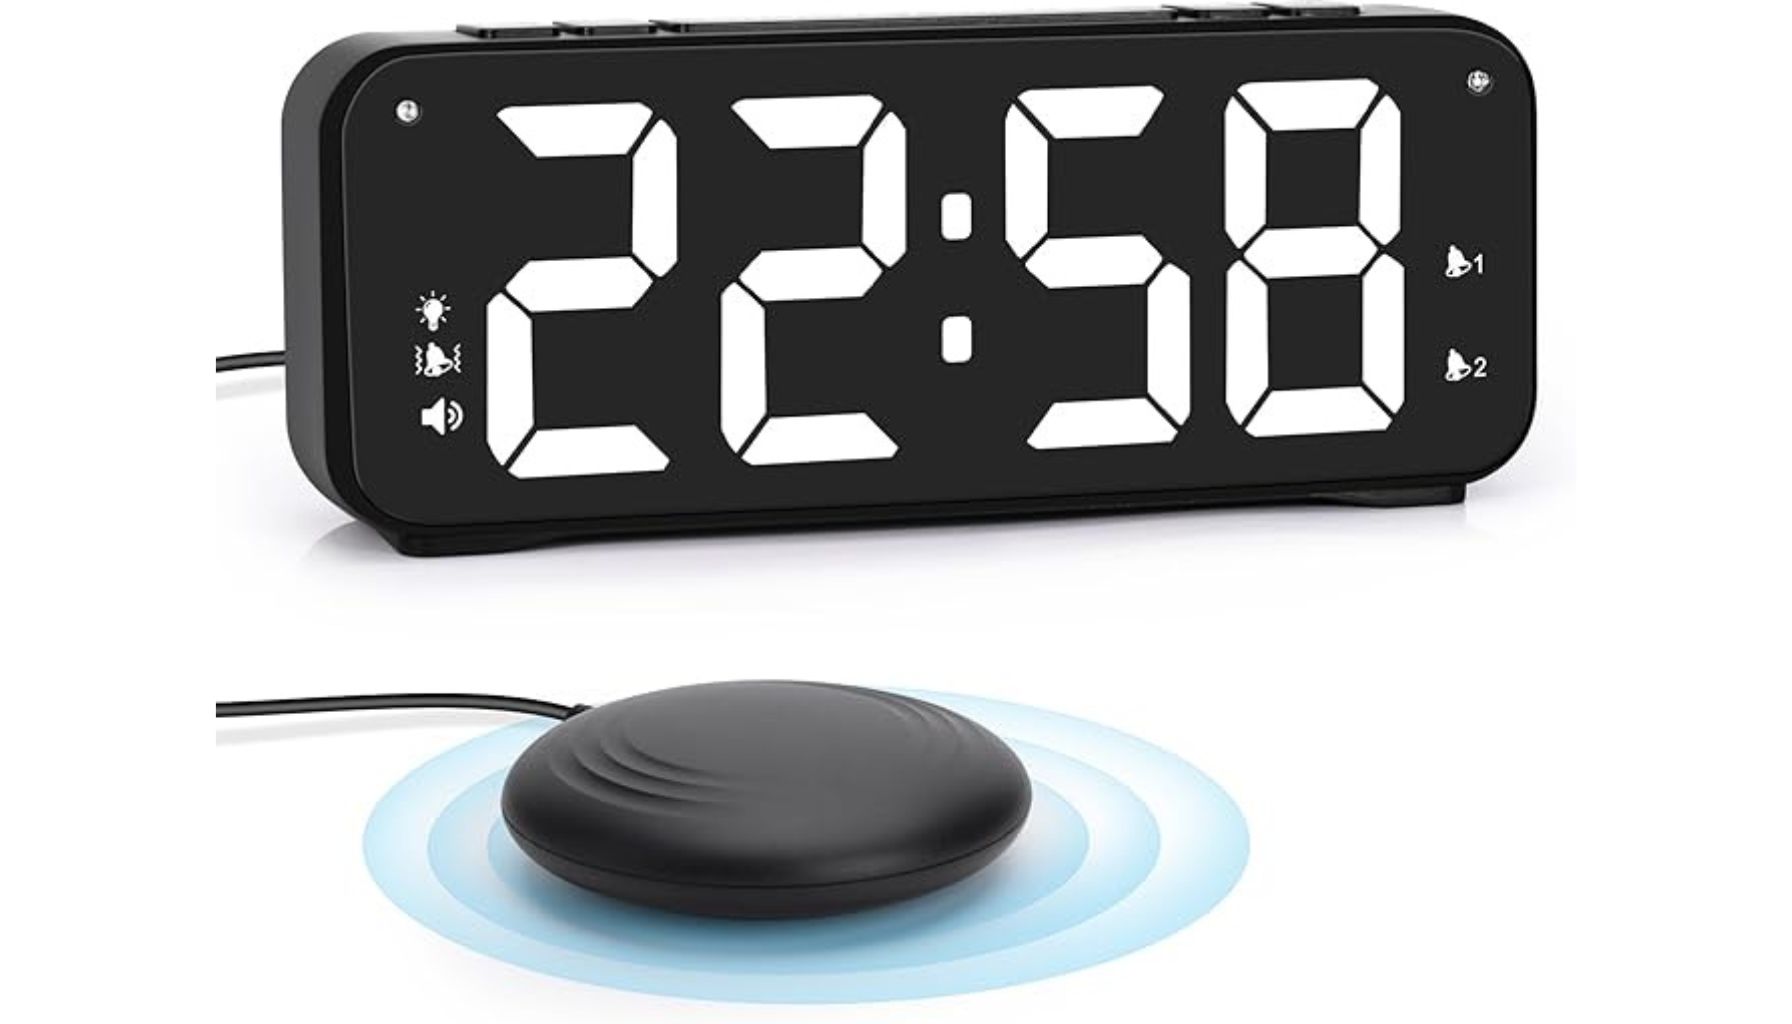 Meloya Loud Alarm Clock Review